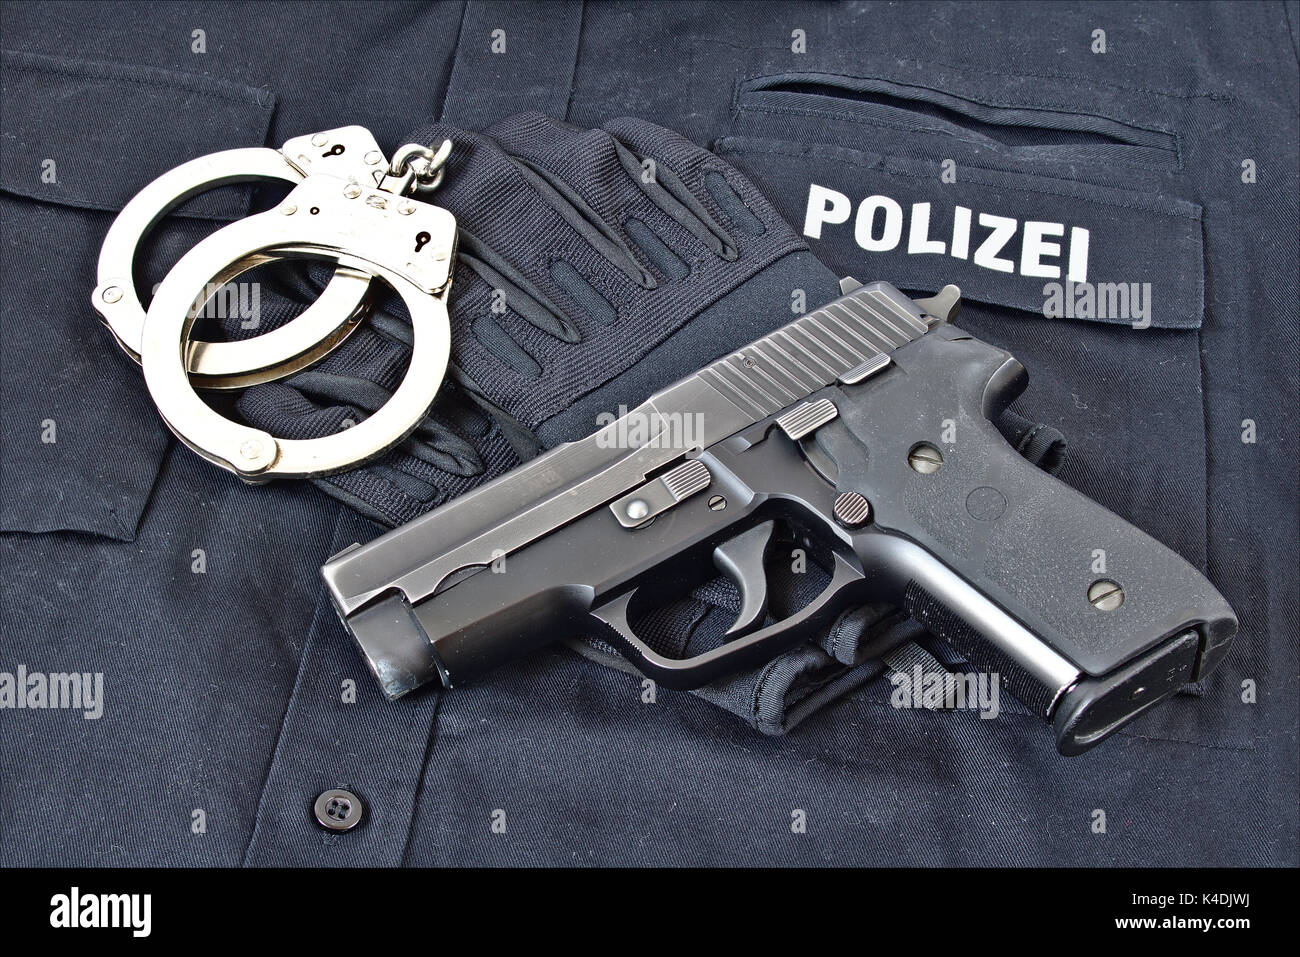 Pistolet avec des menottes et des gants sur bleu chemise uniforme avec "Police" en allemand sur elle Banque D'Images